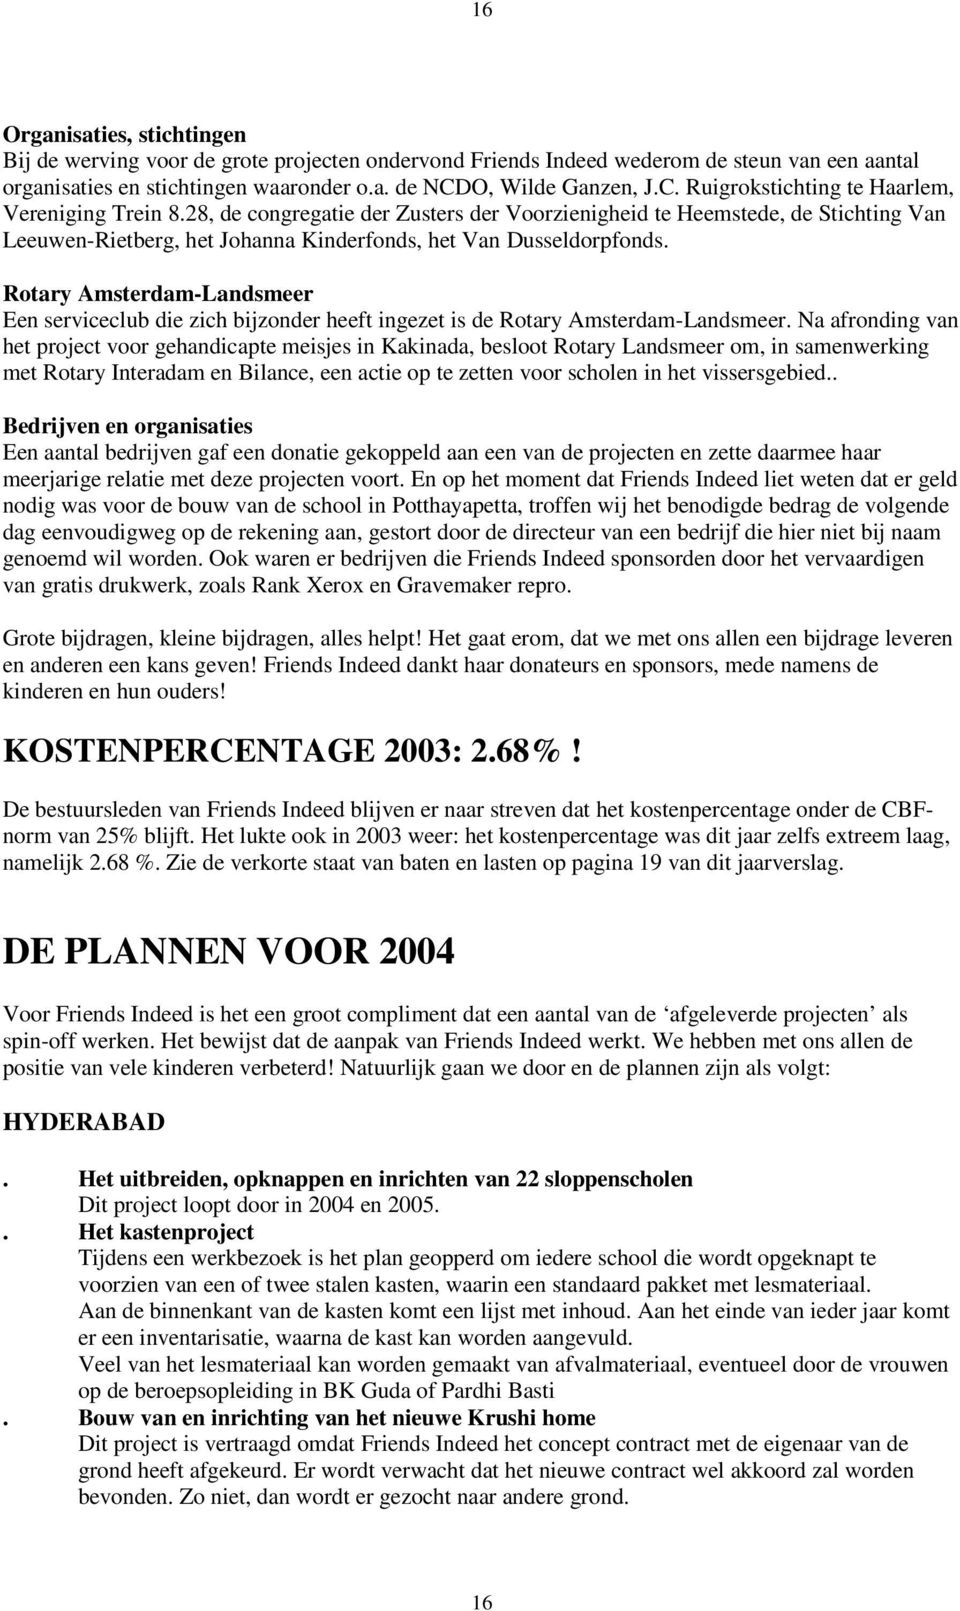 28, de congregatie der Zusters der Voorzienigheid te Heemstede, de Stichting Van Leeuwen-Rietberg, het Johanna Kinderfonds, het Van Dusseldorpfonds.